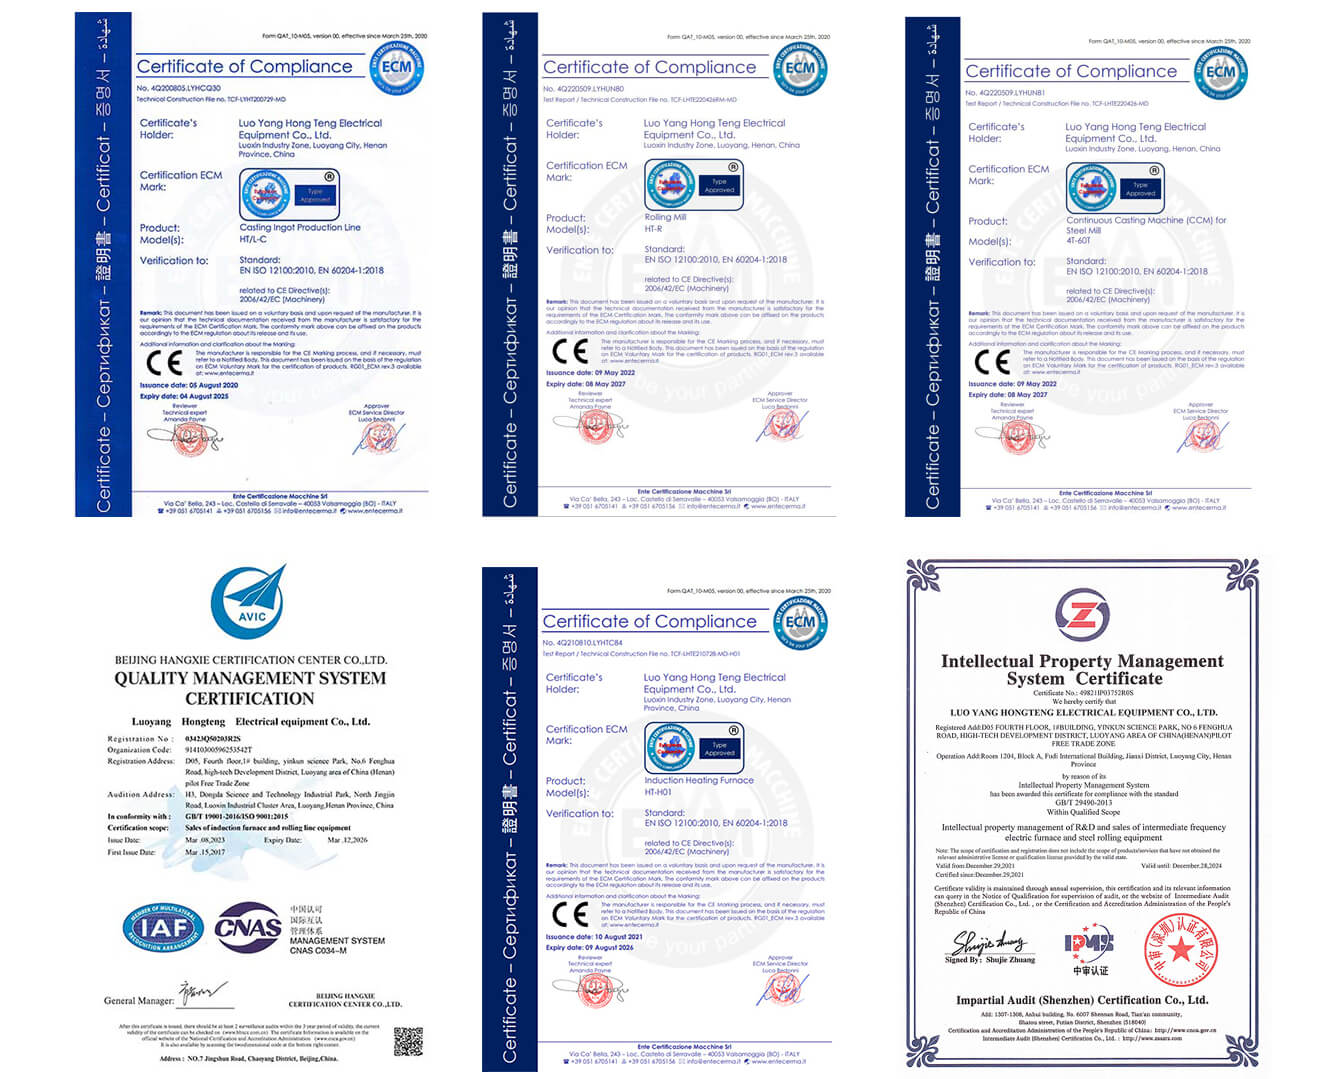 Hongteng certificates